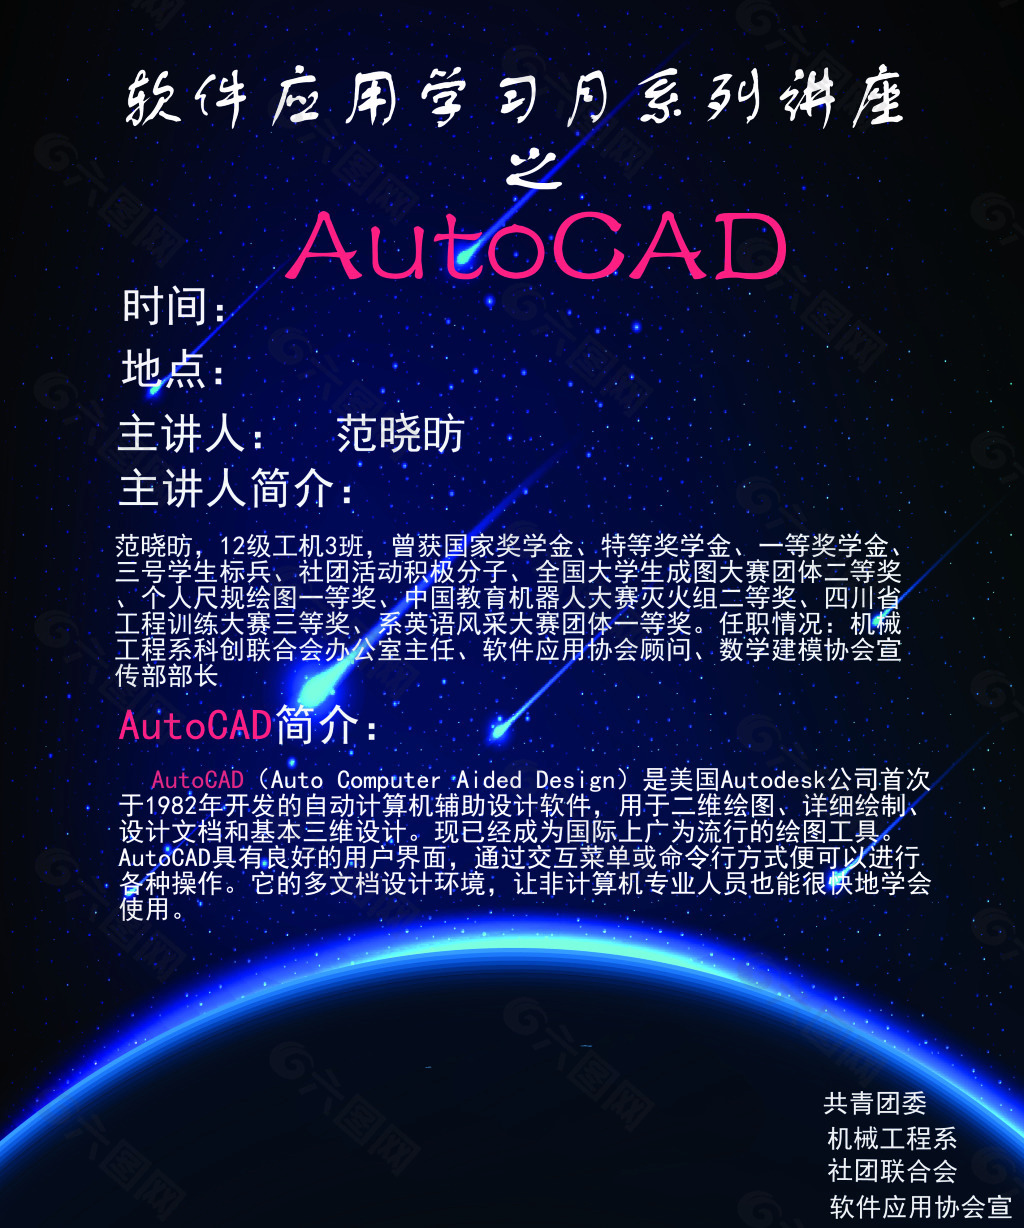 软件应用协会AutoCAD讲座